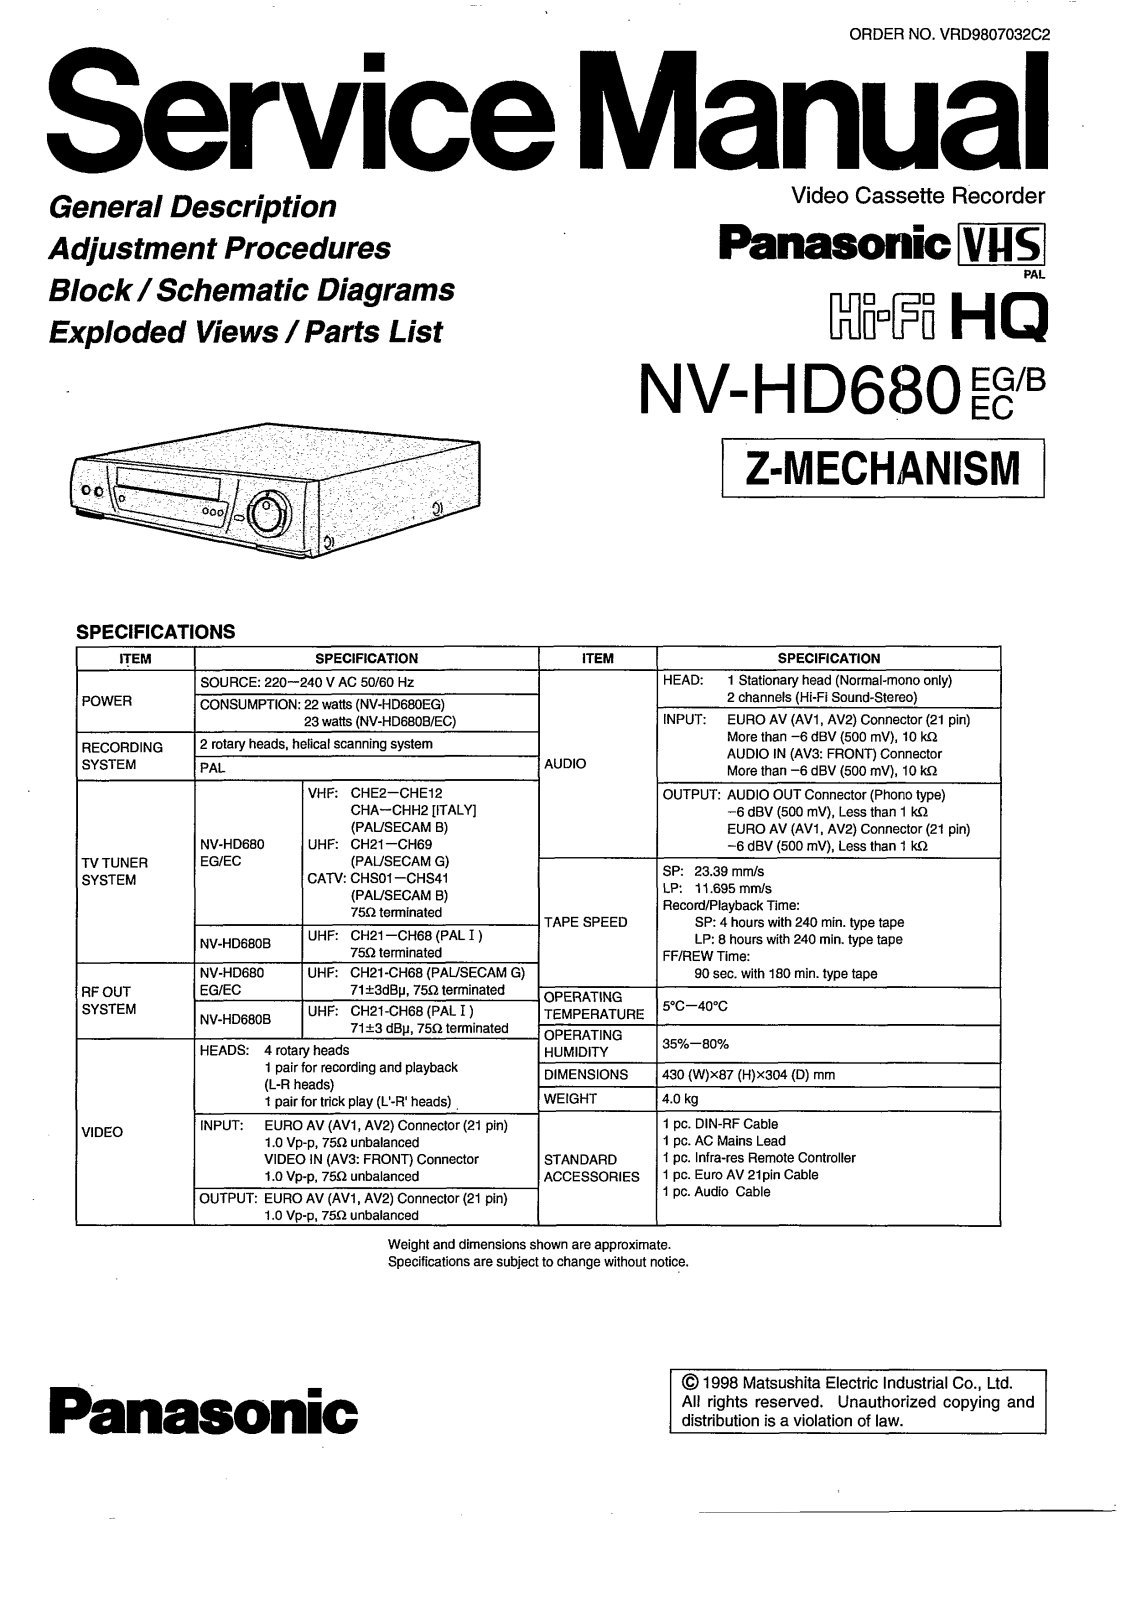 Panasonic NV-HD680 Service Manual